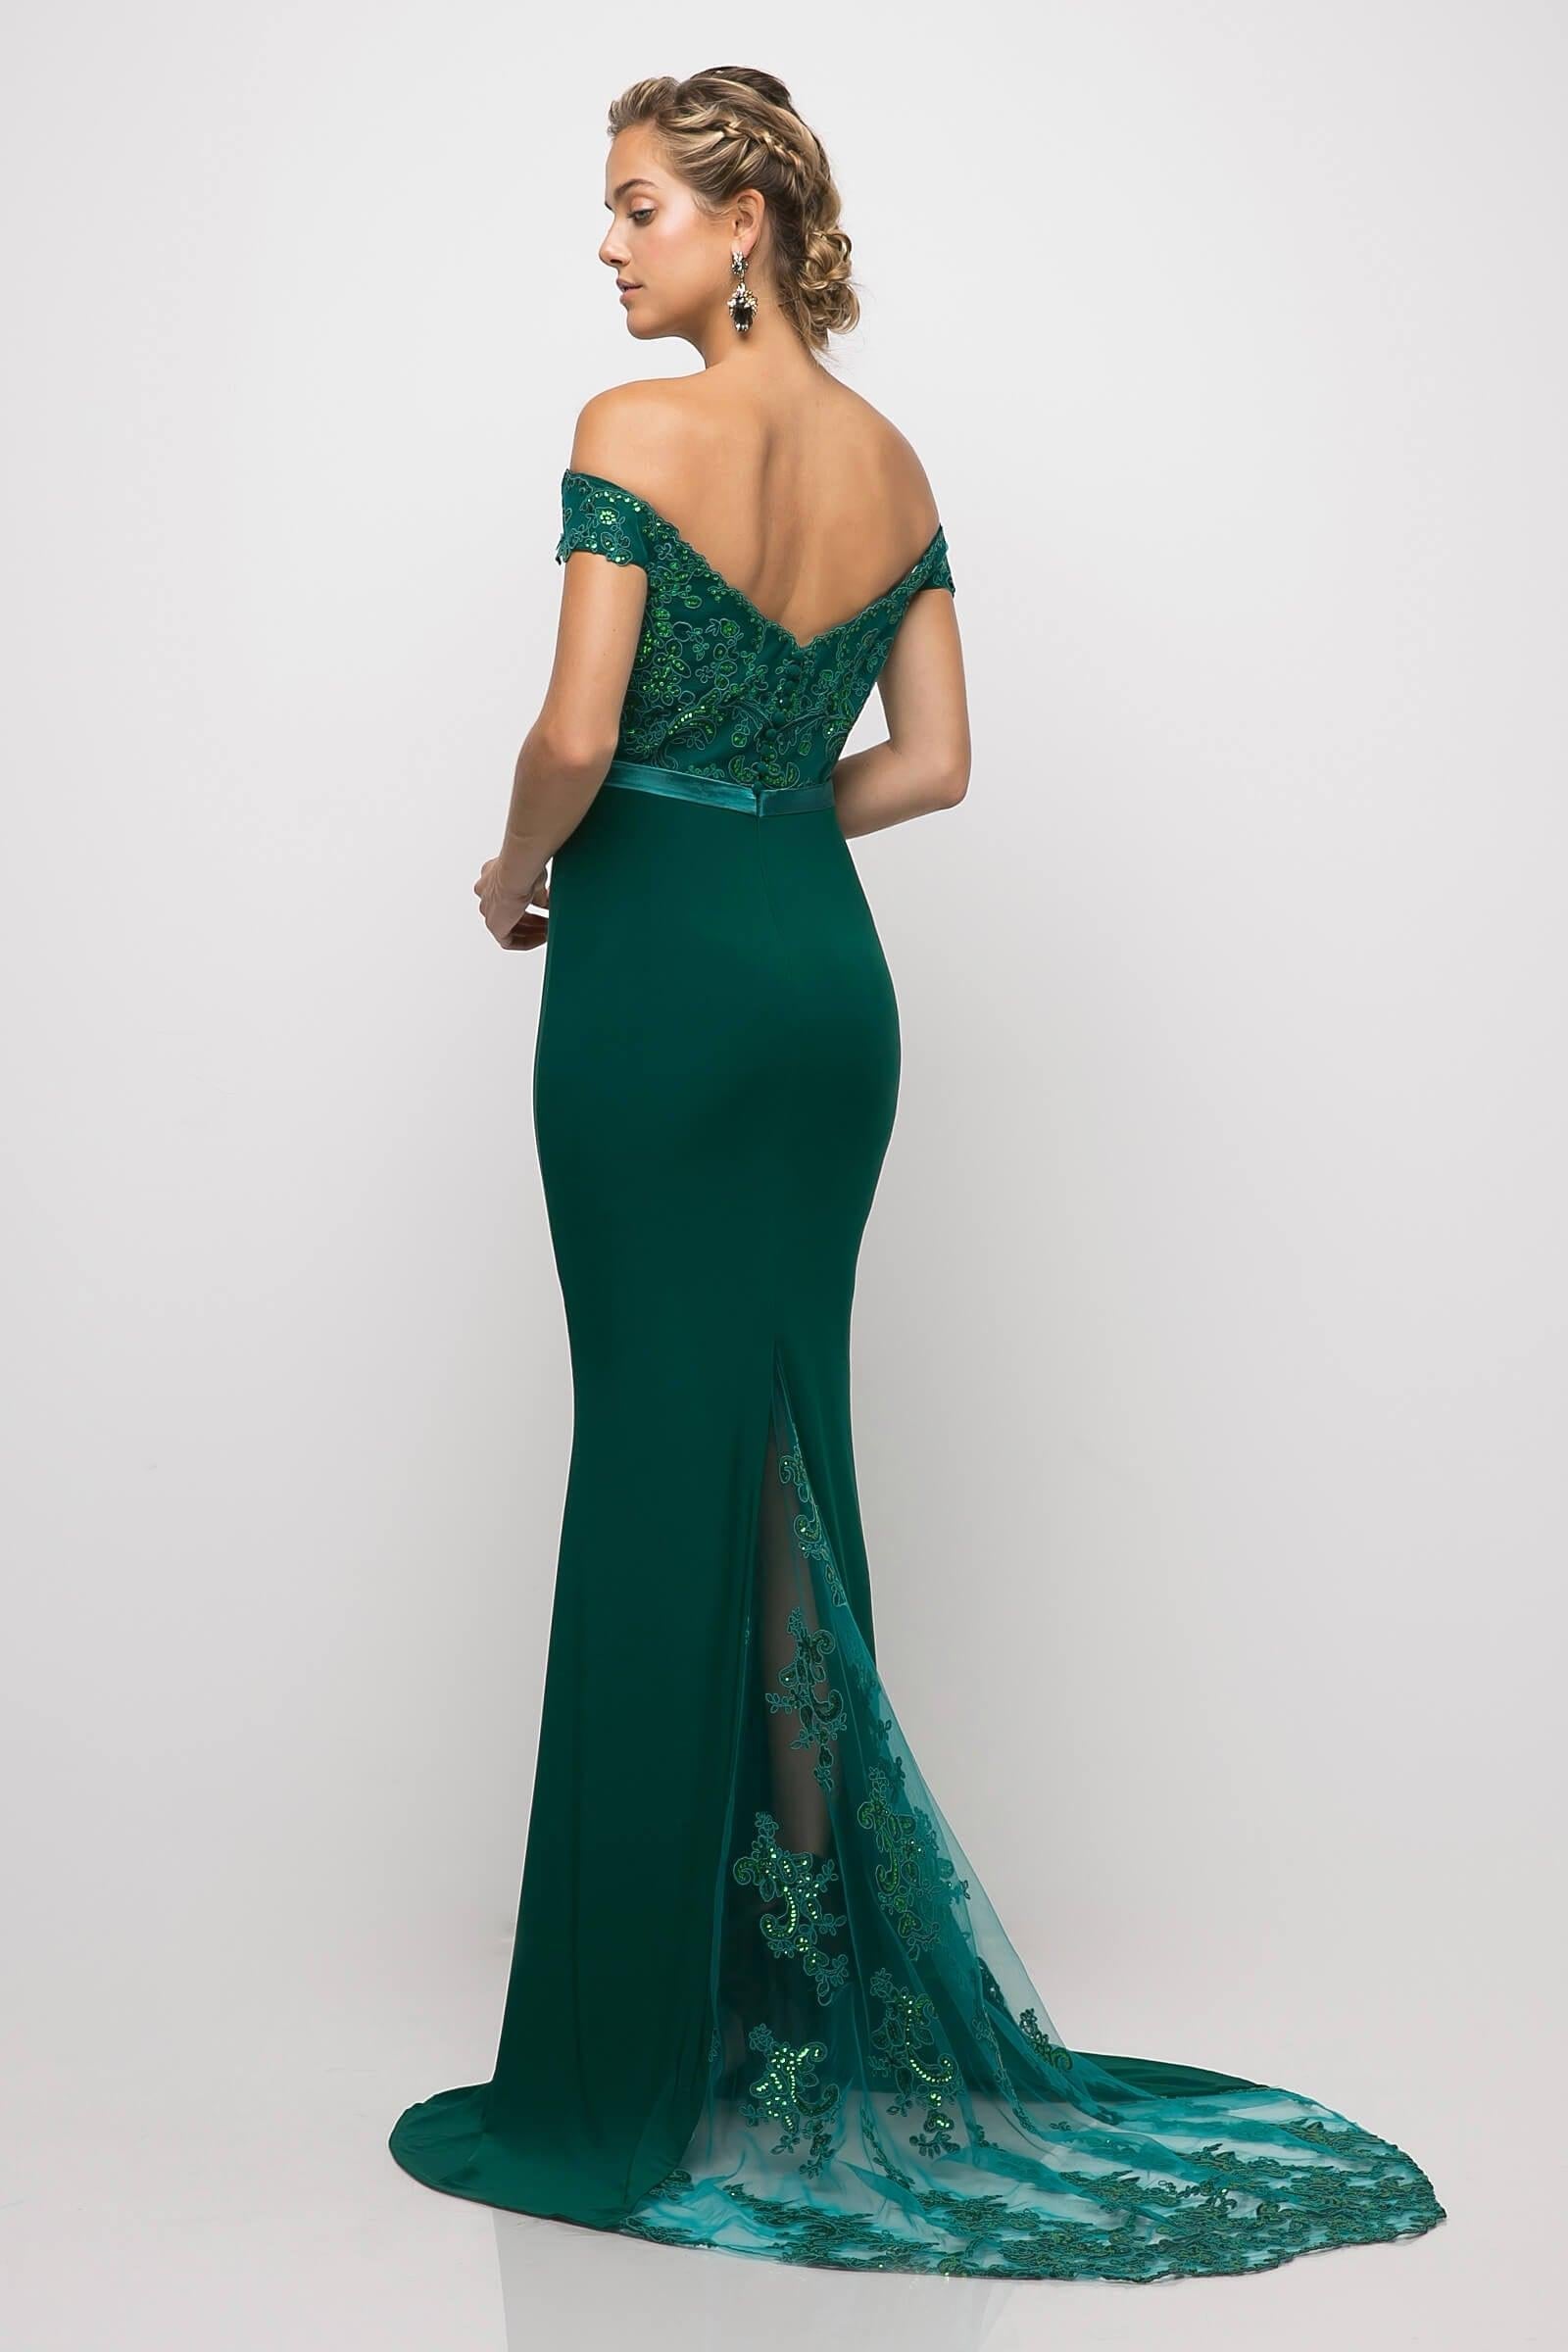 Cinderella Divine UV001 Off Shoulder Prom Dress Formal Gown | The Dress ...